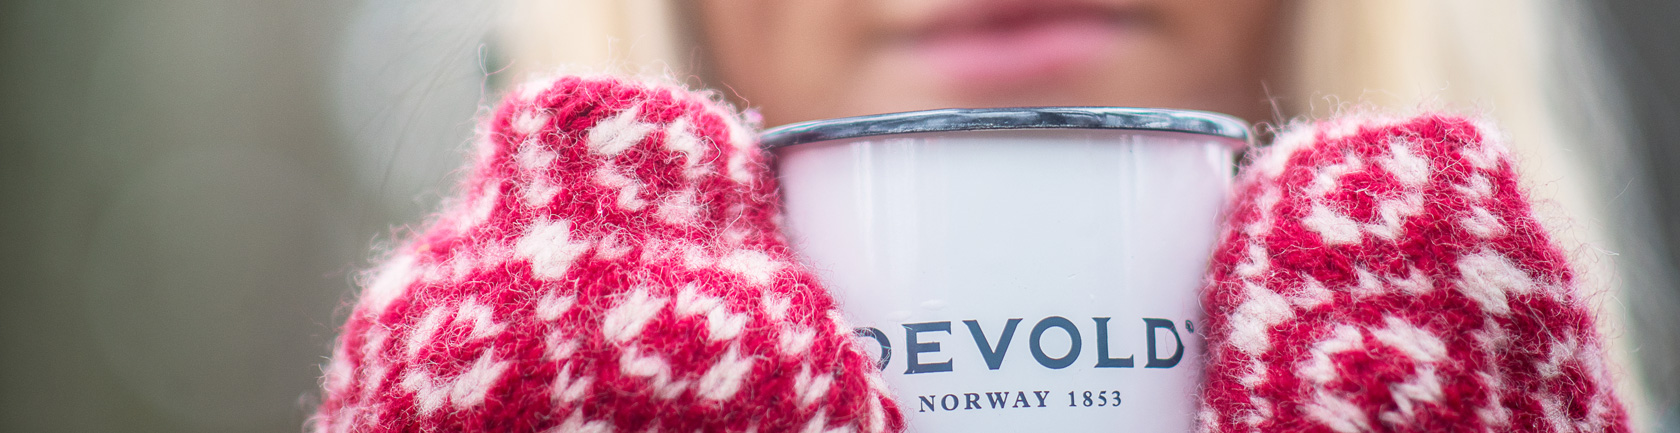 Handschuhe - Devold of Norway